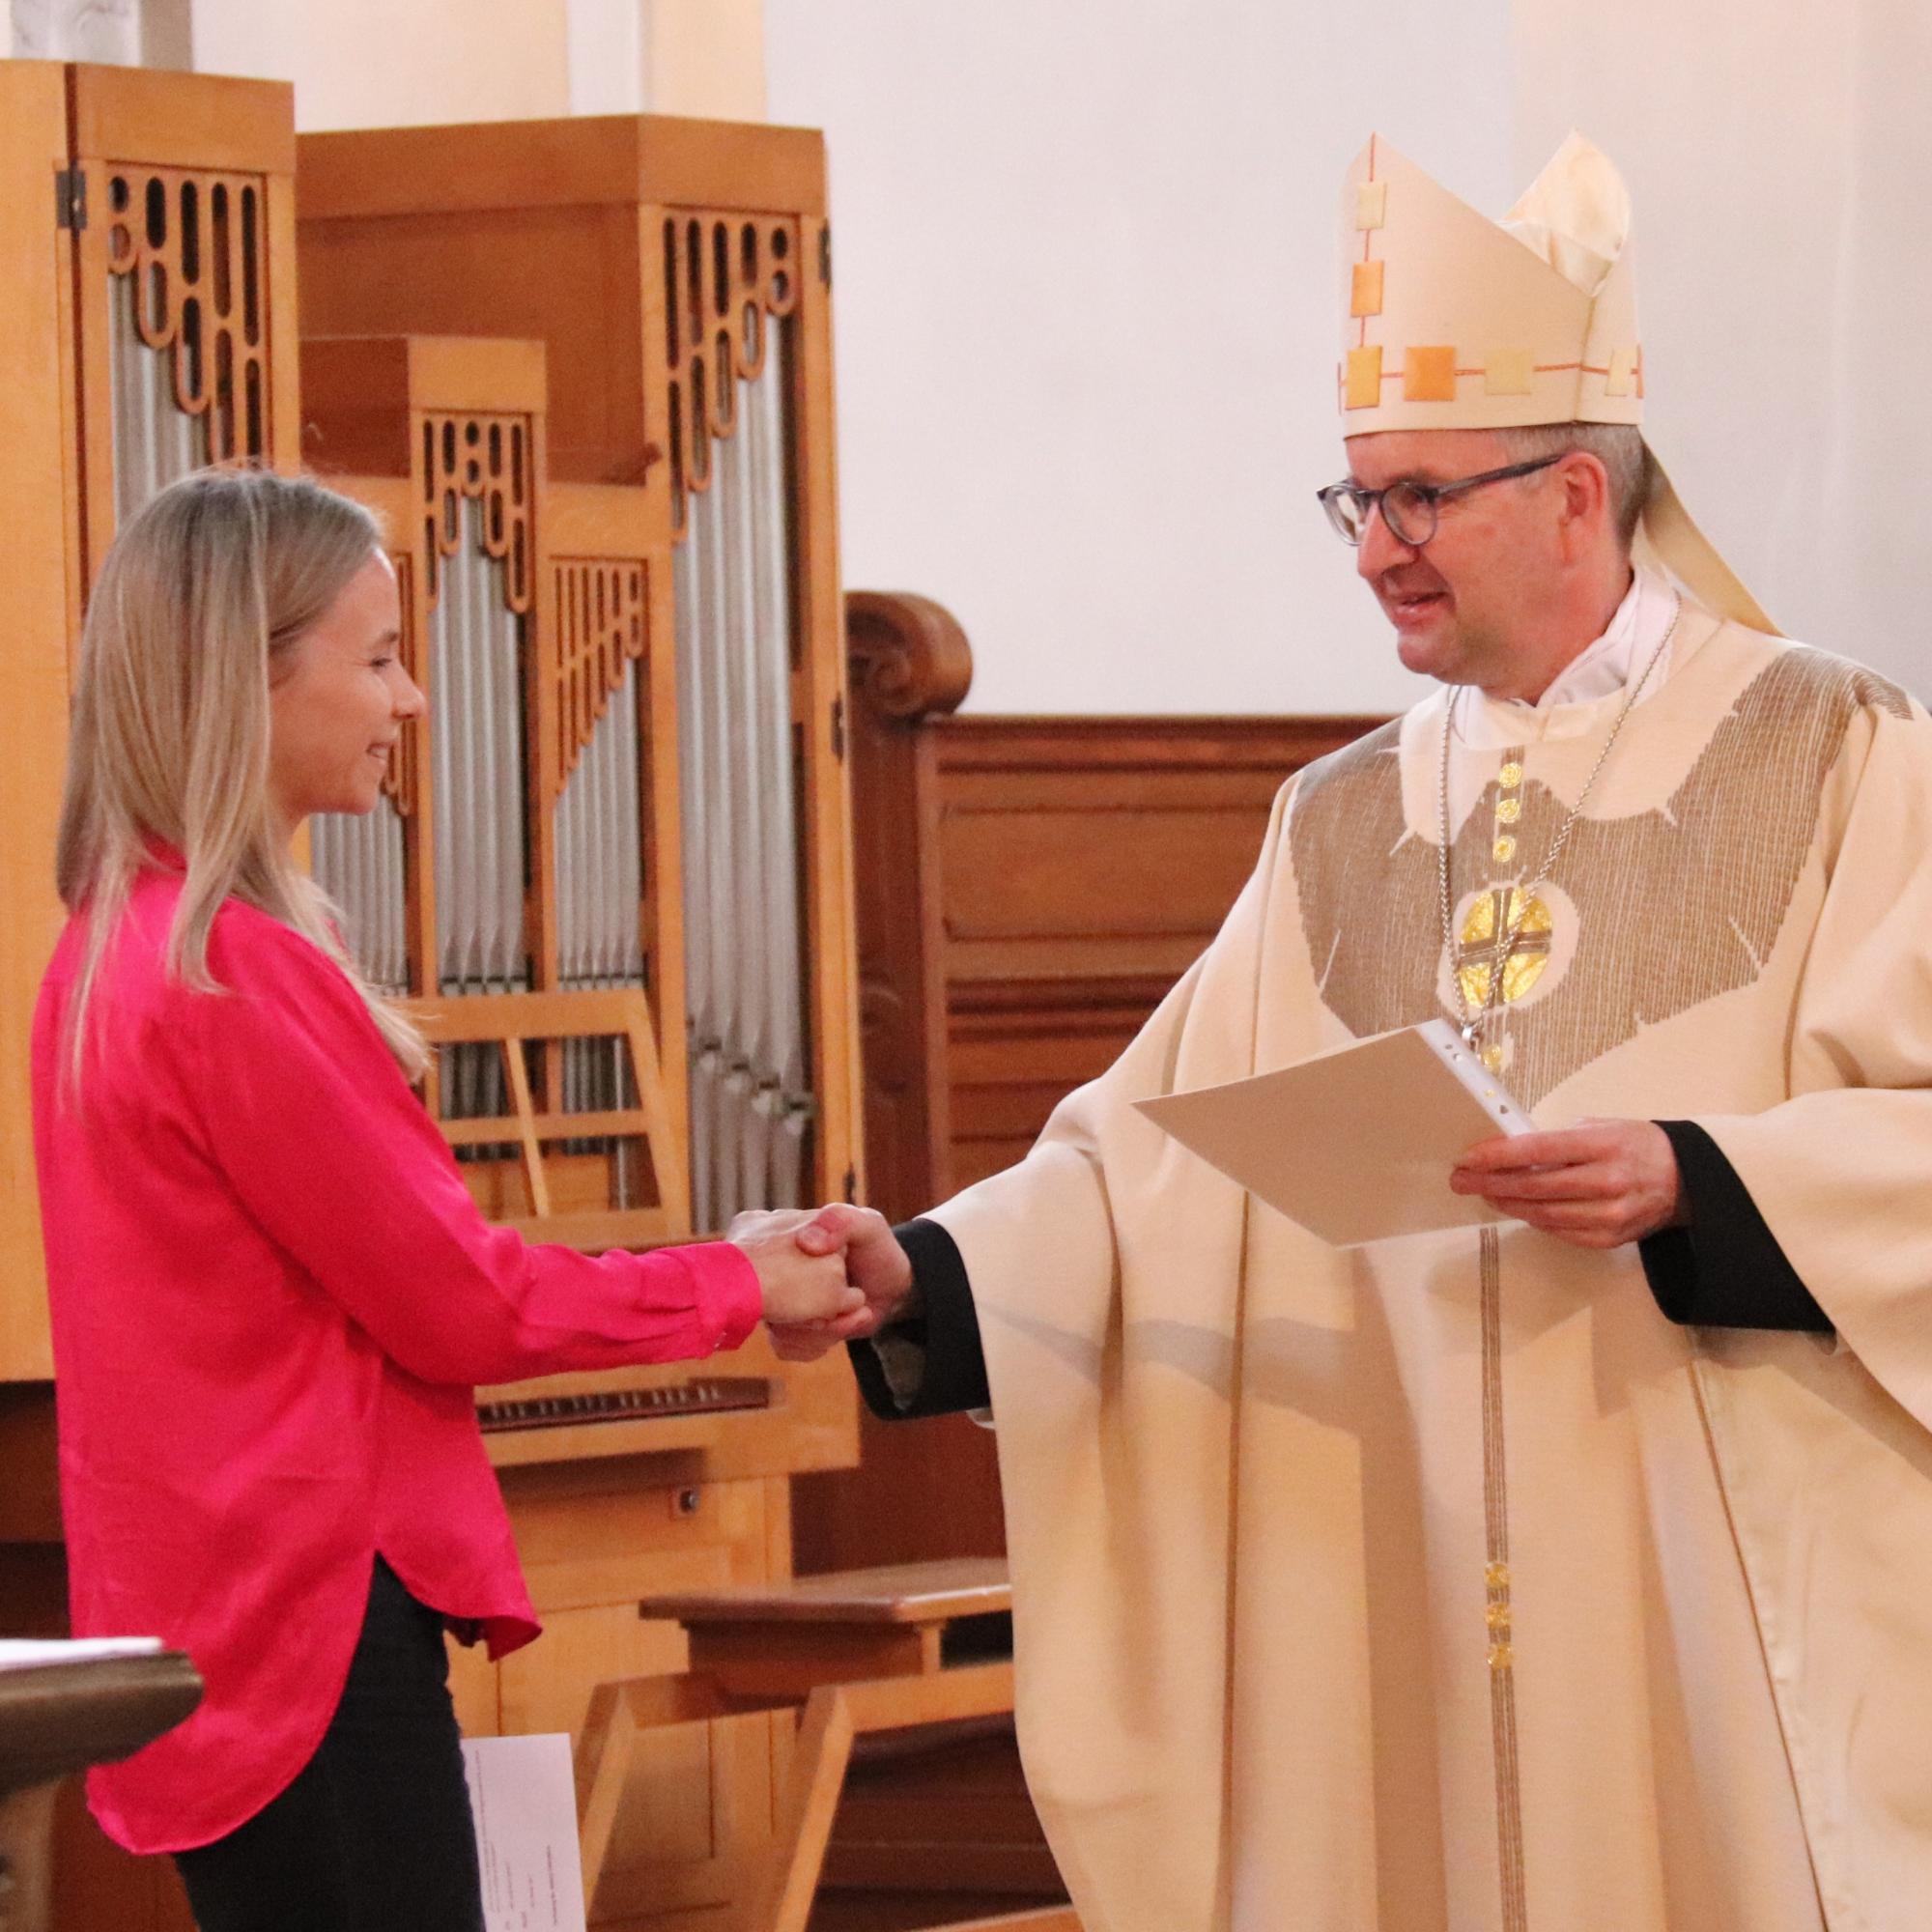 Bischof Peter Kohlgraf verleiht die Missio canonica in der Mainzer Augustinerkirche